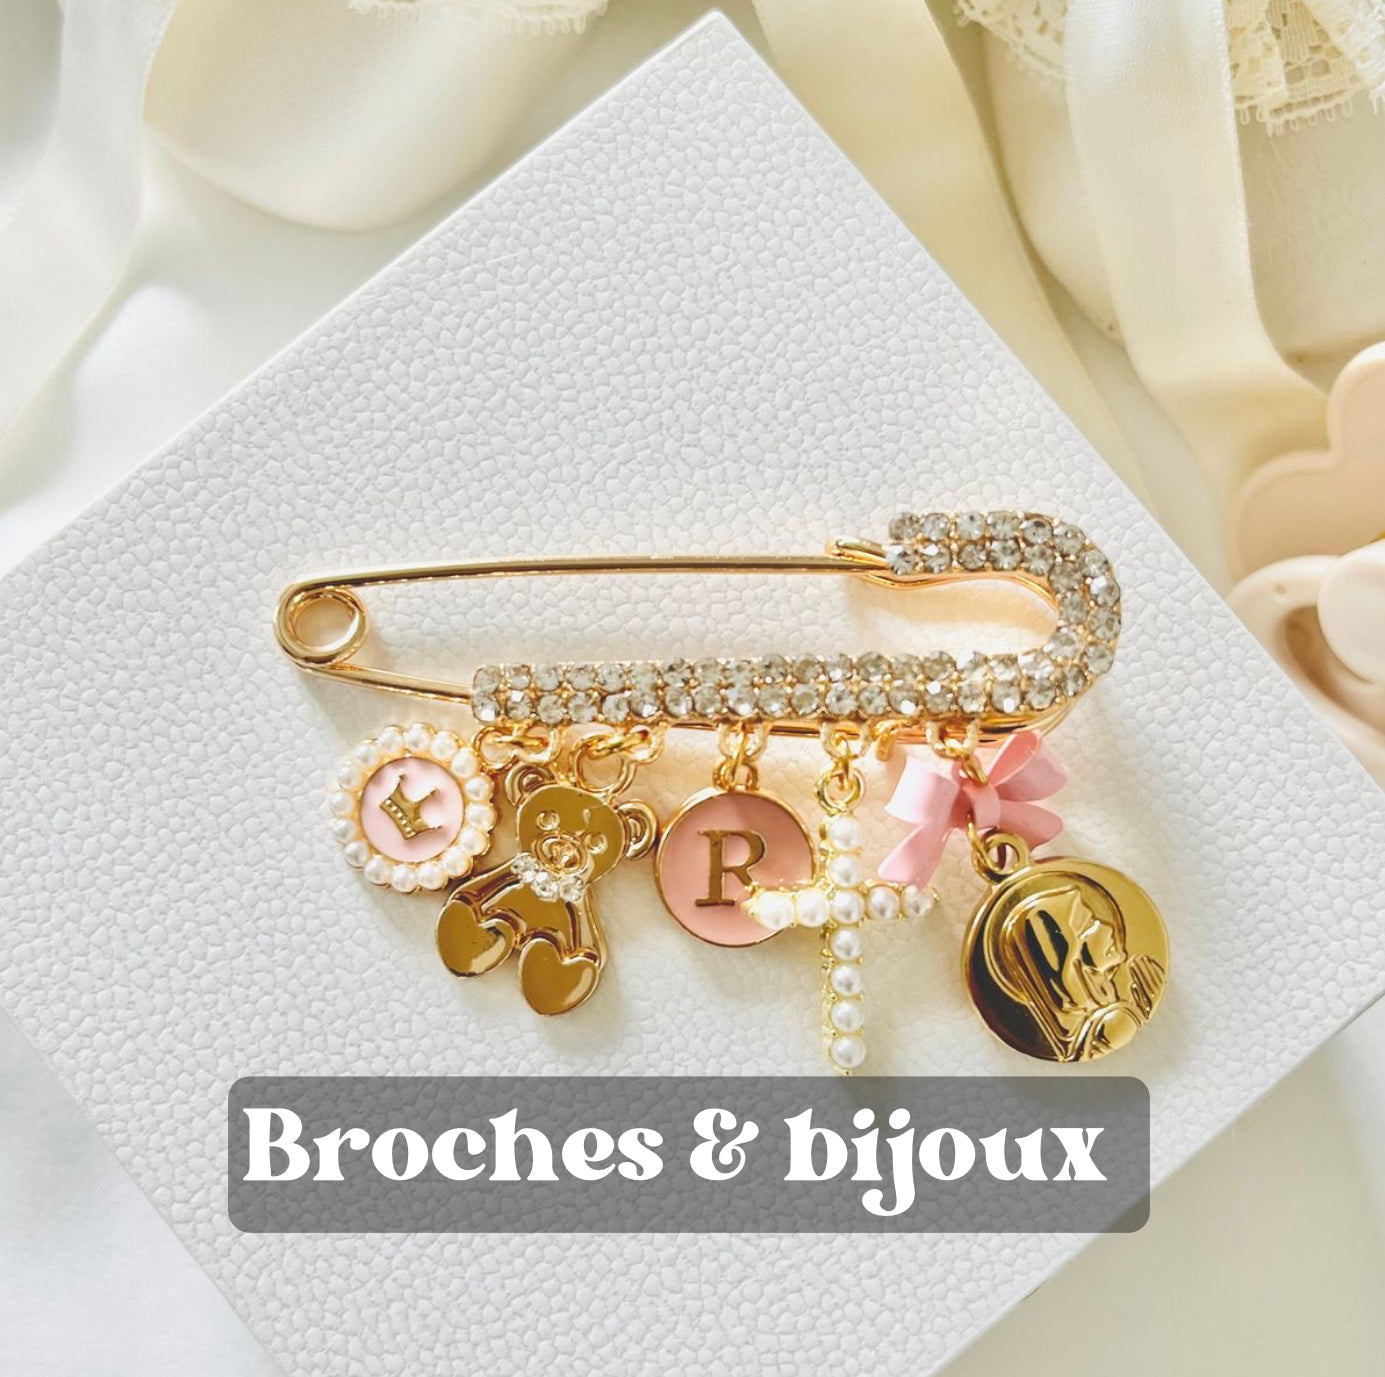 Broches & Bijoux